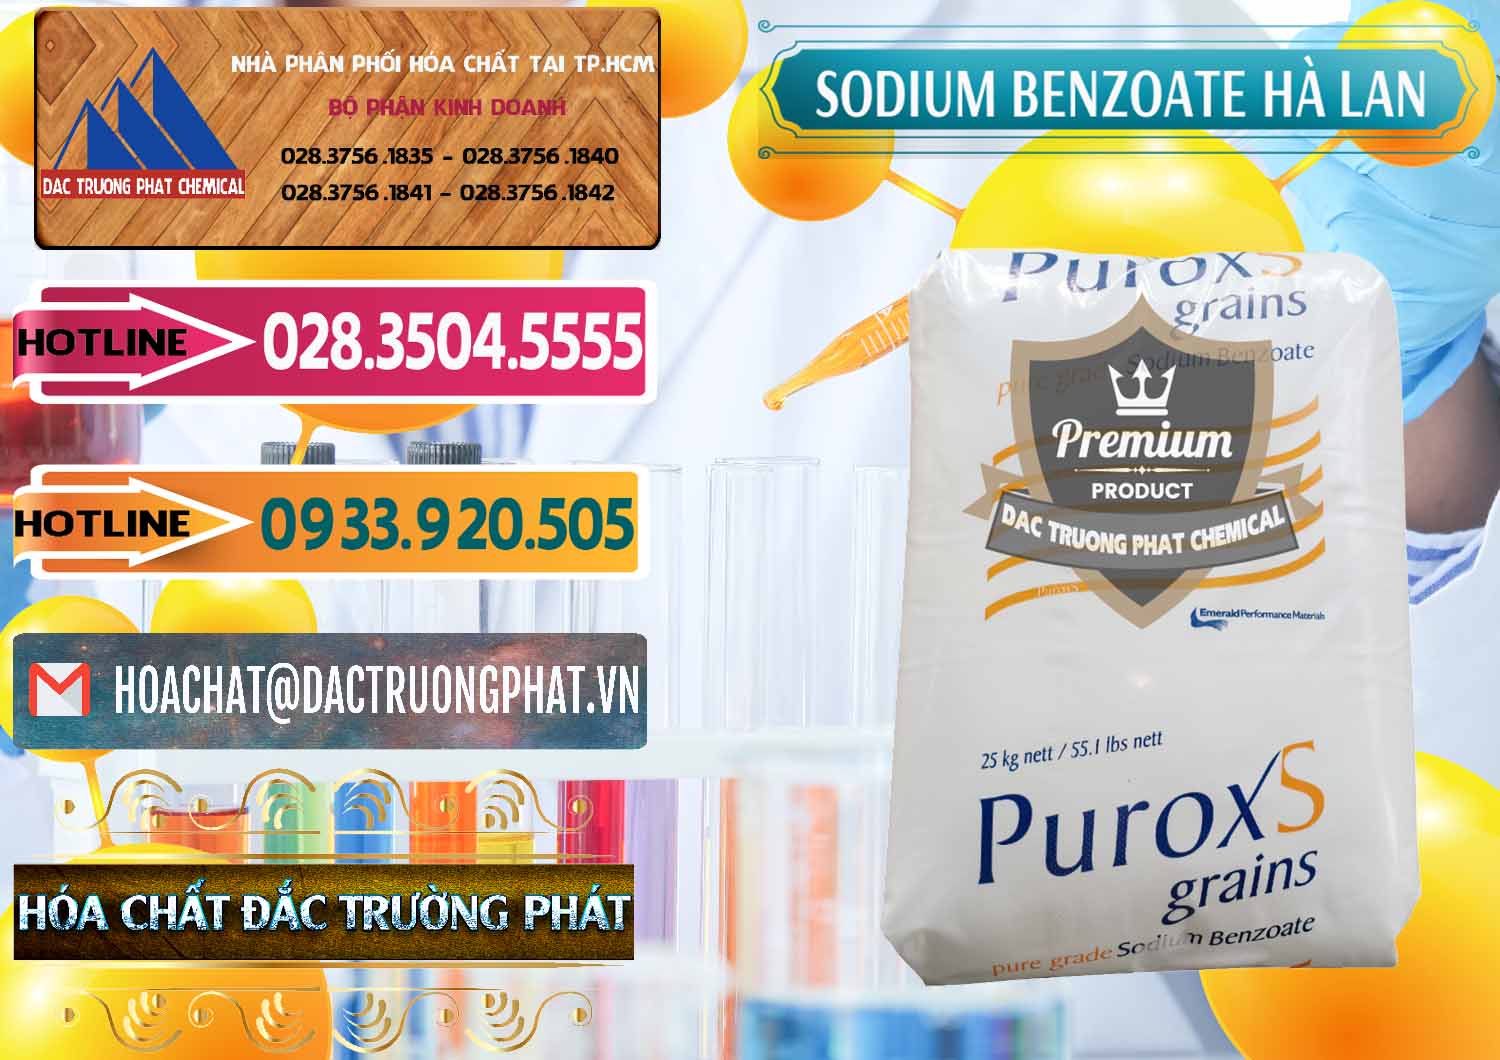 Công ty chuyên nhập khẩu - bán Sodium Benzoate - Mốc Bột Puroxs Hà Lan Netherlands - 0467 - Chuyên cung ứng & phân phối hóa chất tại TP.HCM - dactruongphat.vn